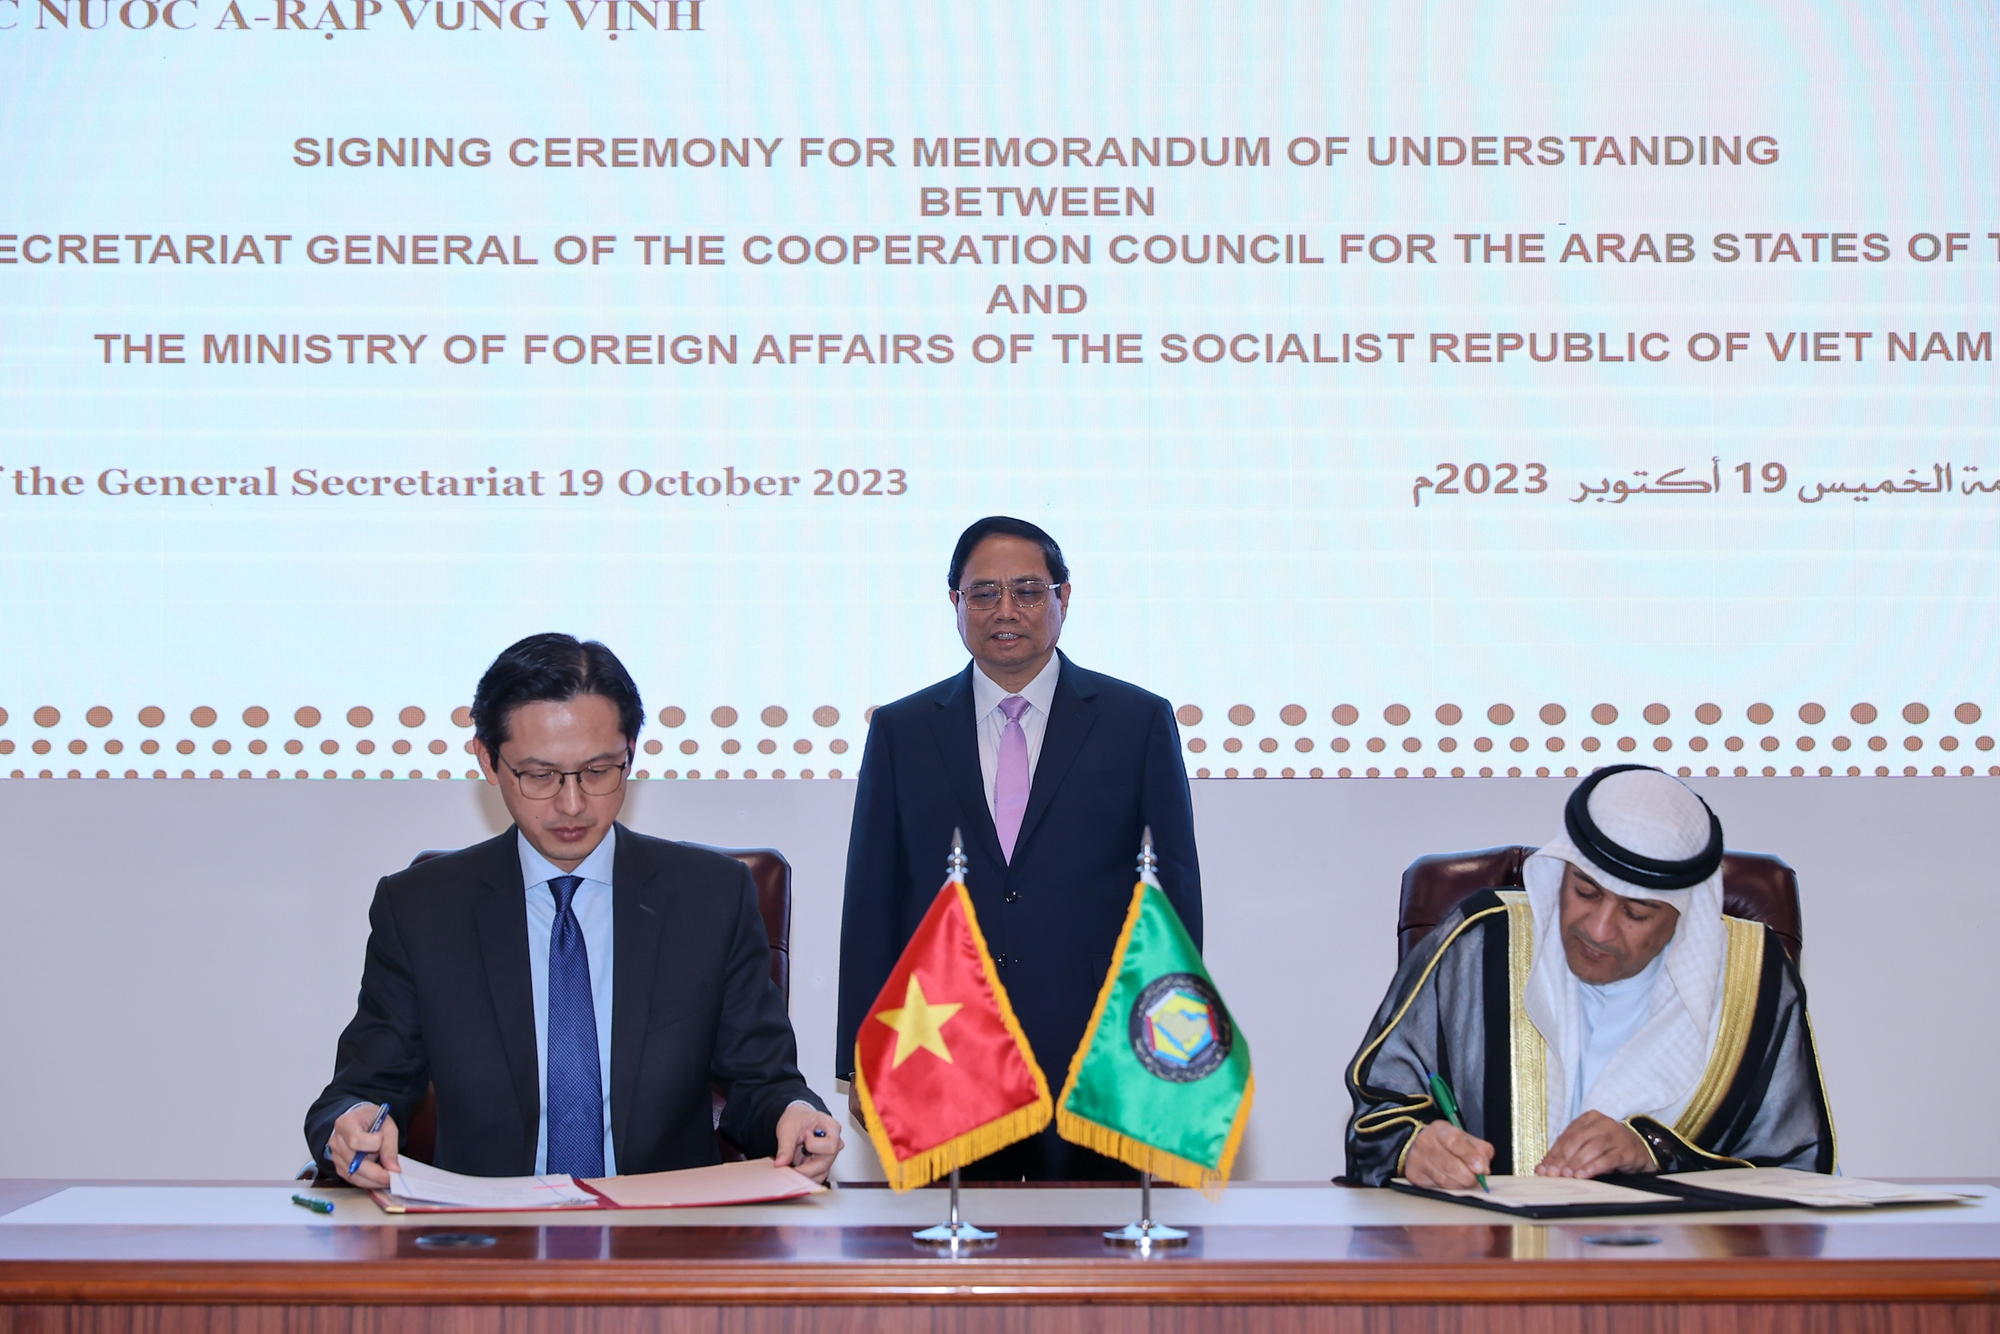 Thủ tướng chứng kiến lễ ký kết Biên bản ghi nhớ về hợp tác giữa Bộ Ngoại giao Việt Nam và Ban Thư ký GCC - Ảnh: VGP/Nhật Bắc